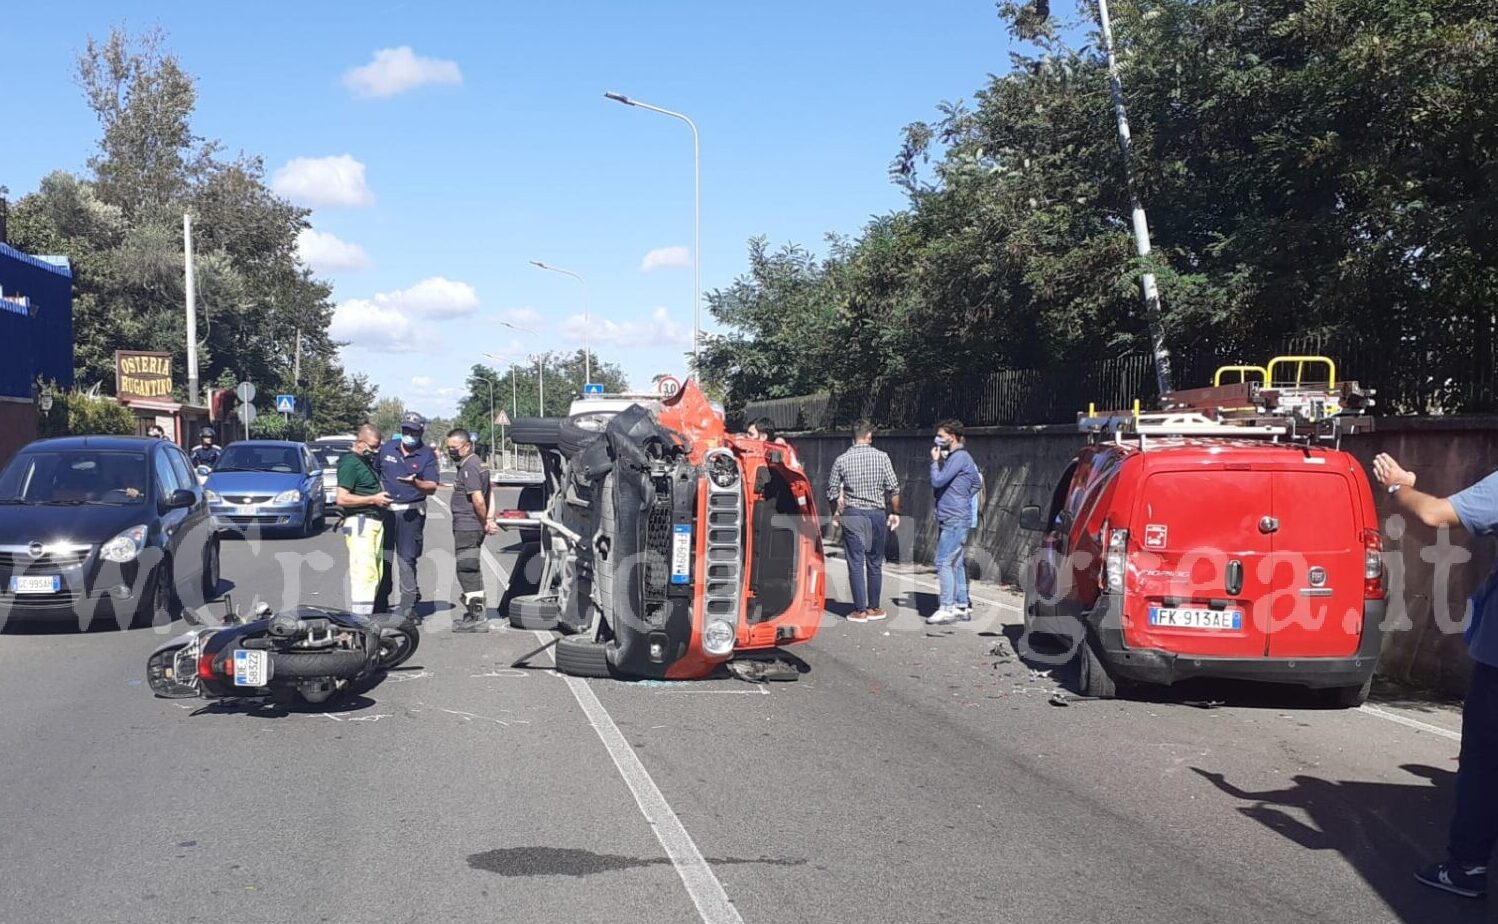 Spaventoso incidente a Pozzuoli, auto si capovolge e furgone Telecom finisce in un palo: diversi i feriti – LE FOTO